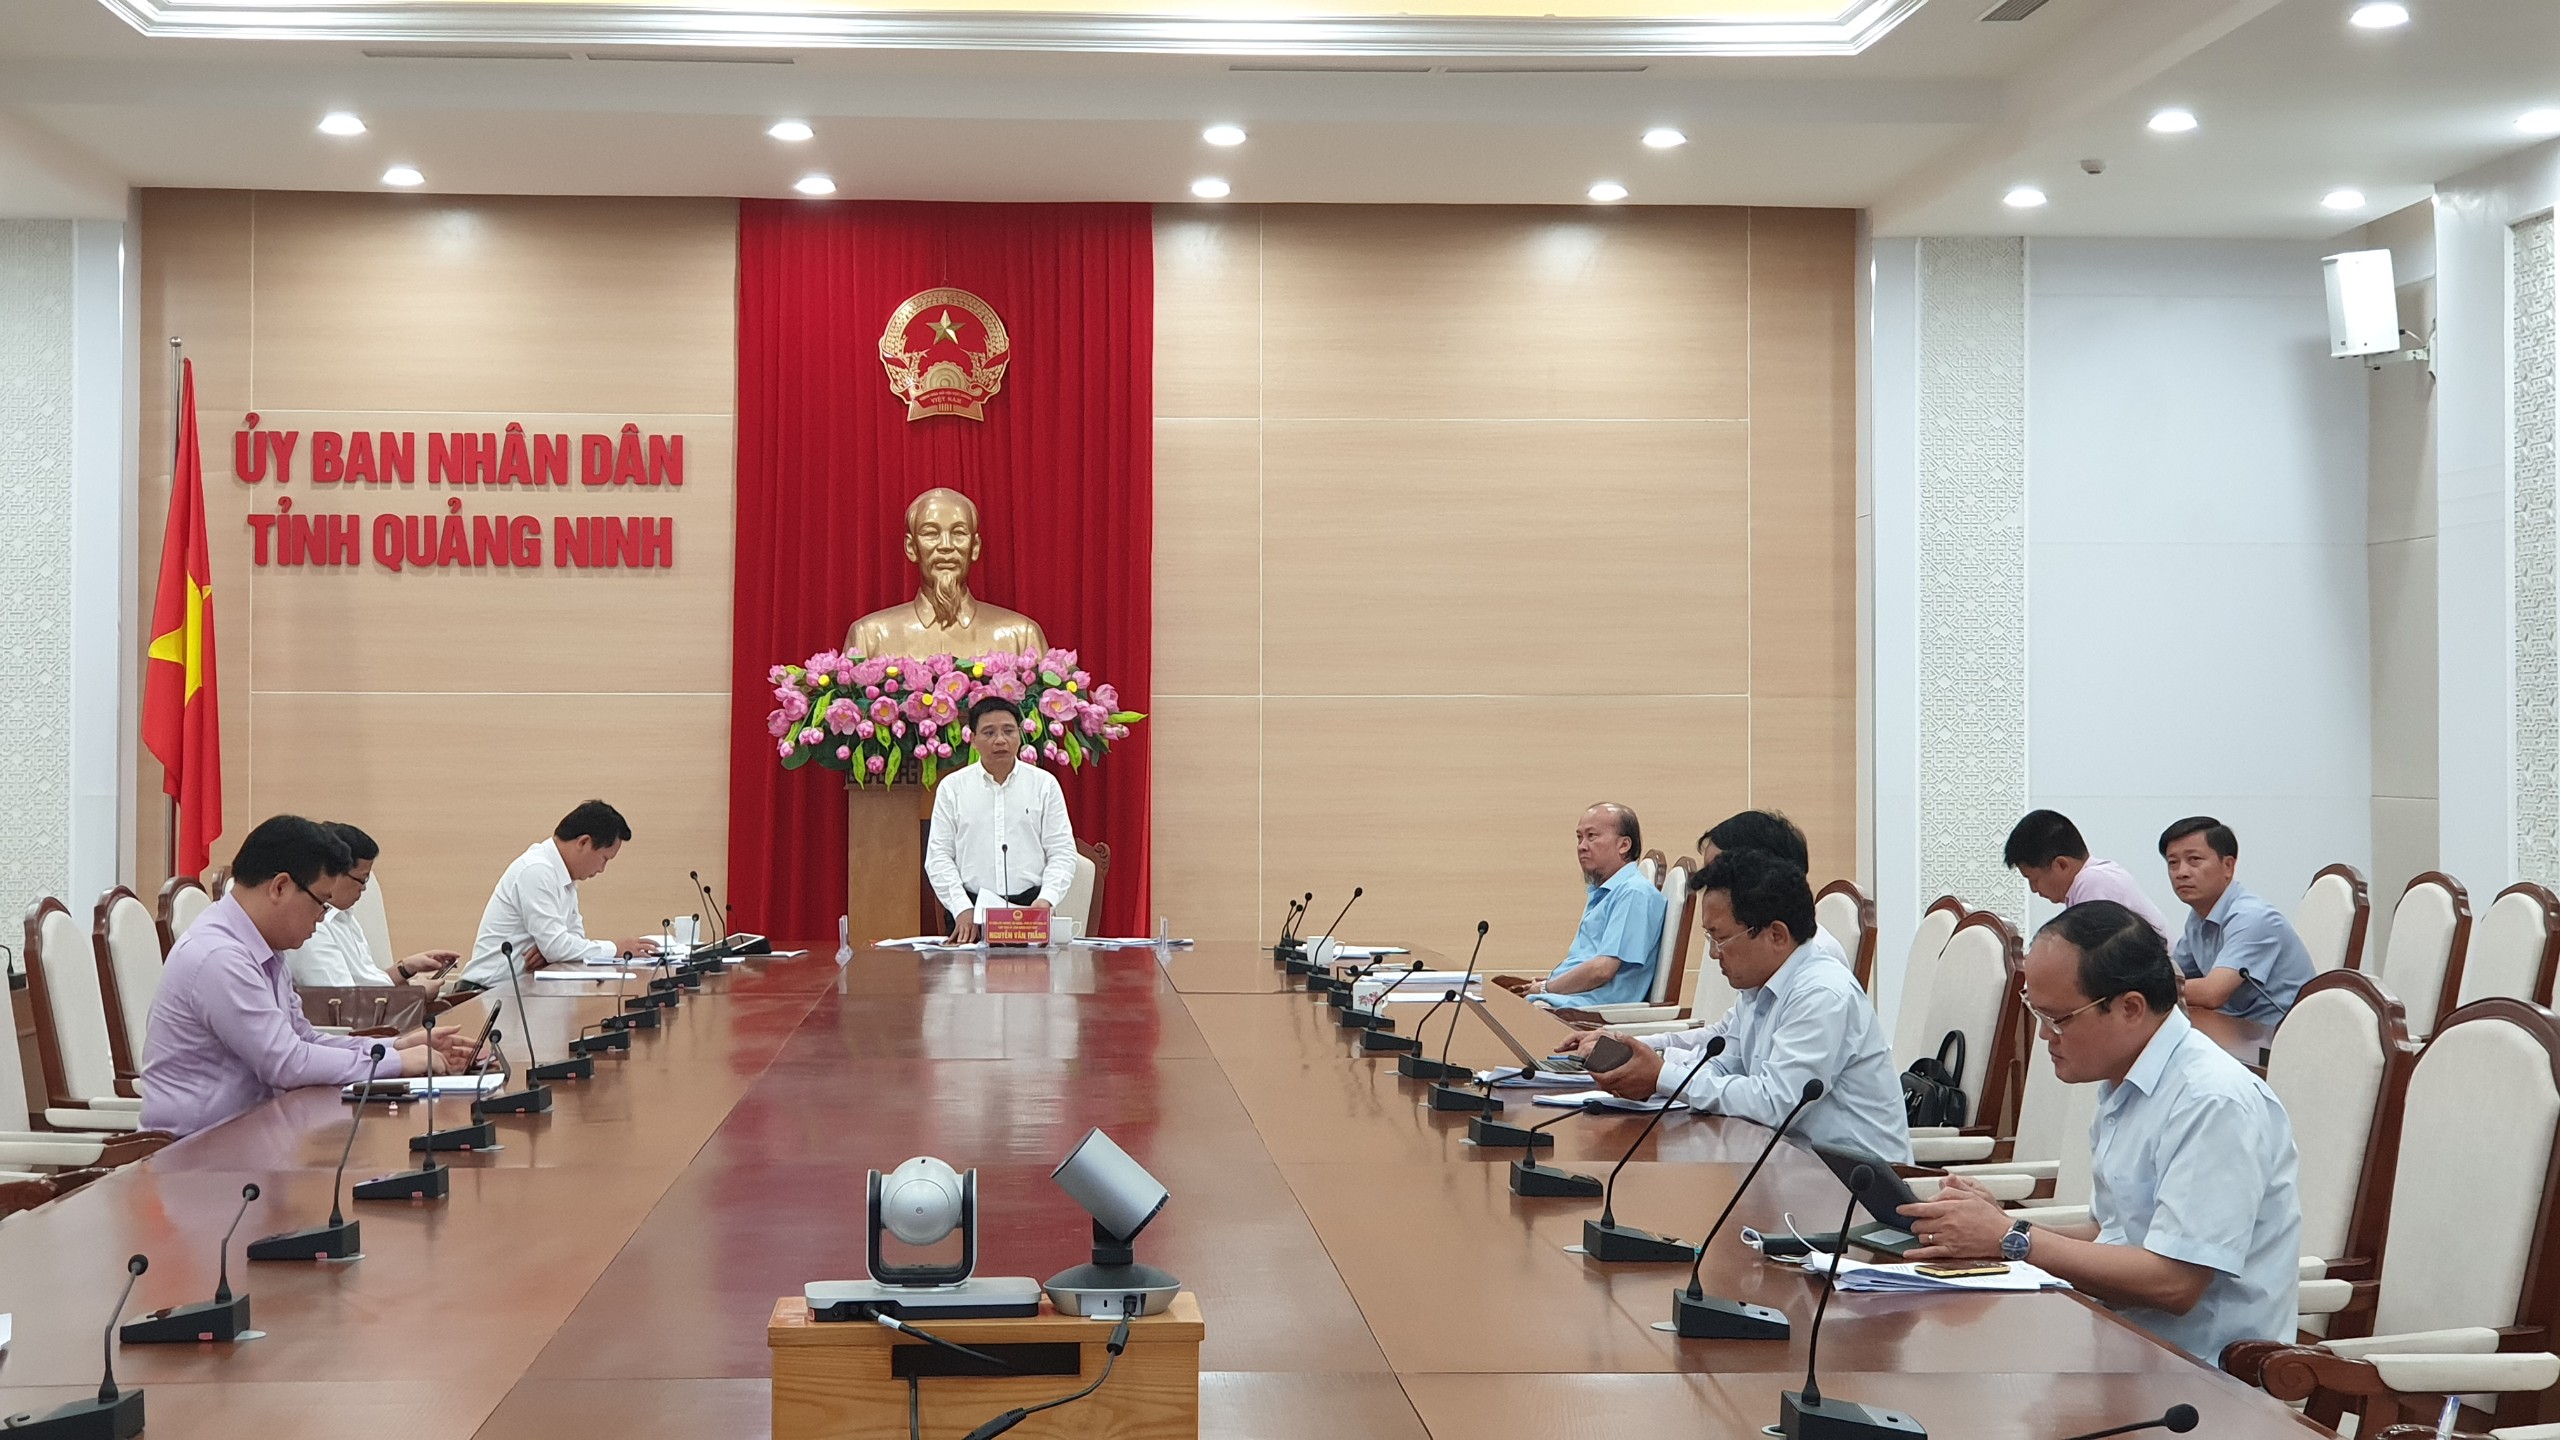 Đồng chí Nguyễn Văn Thắng, Chủ tịch UBND tỉnh kết luận cuộc họp.